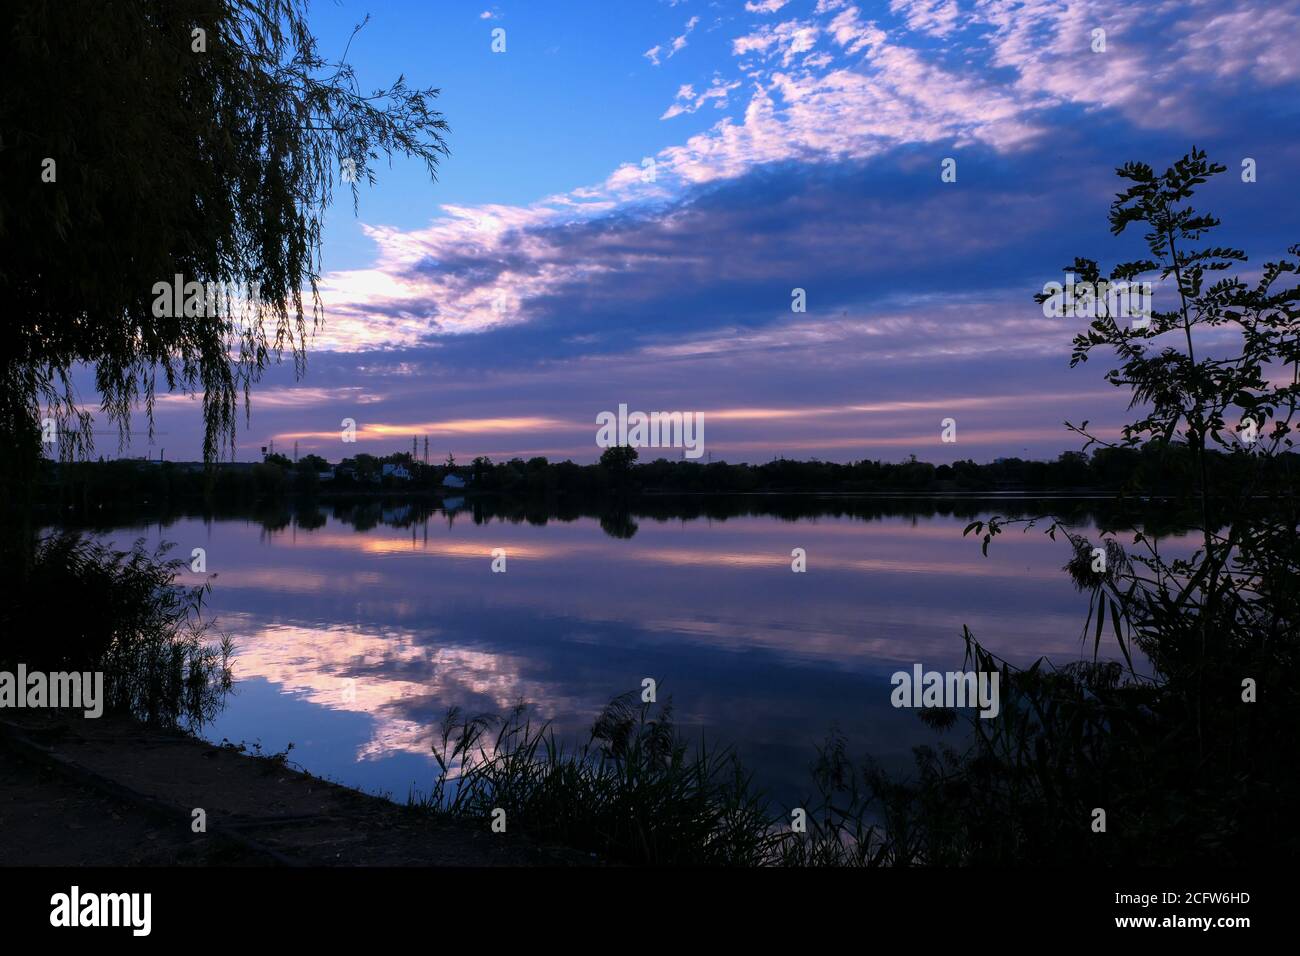 Simmetria del cielo in un lago all'alba. Nuvole che si riflettono sull'acqua. Paesaggio di vacanza al mare. Silhouette di vegetazioni in primo piano. Foto Stock